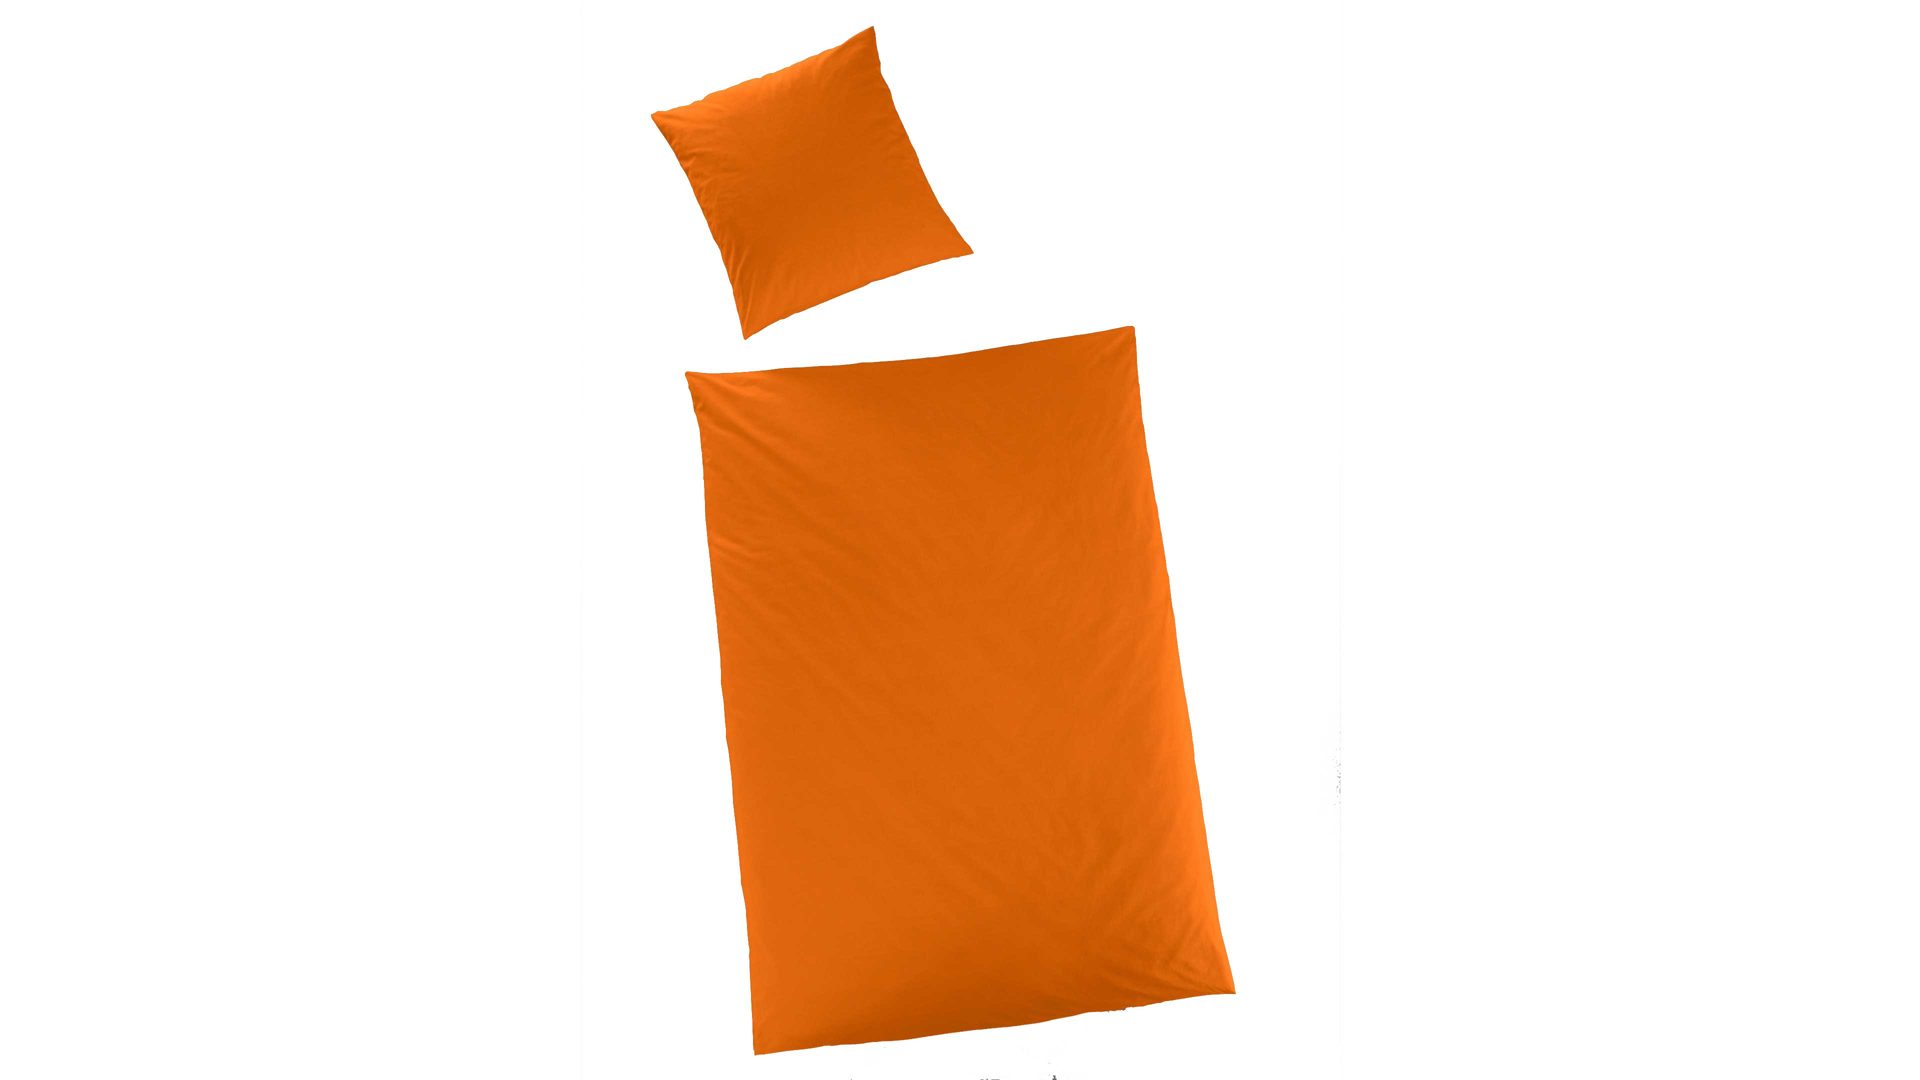 Bettwäsche-Set H.g. hahn haustextilien aus Stoff in Orange HAHN Luxus-Satin-Bettwäsche Sempre orangefarbener Baumwollsatin - zweiteilig, ca. 155 x 220 cm